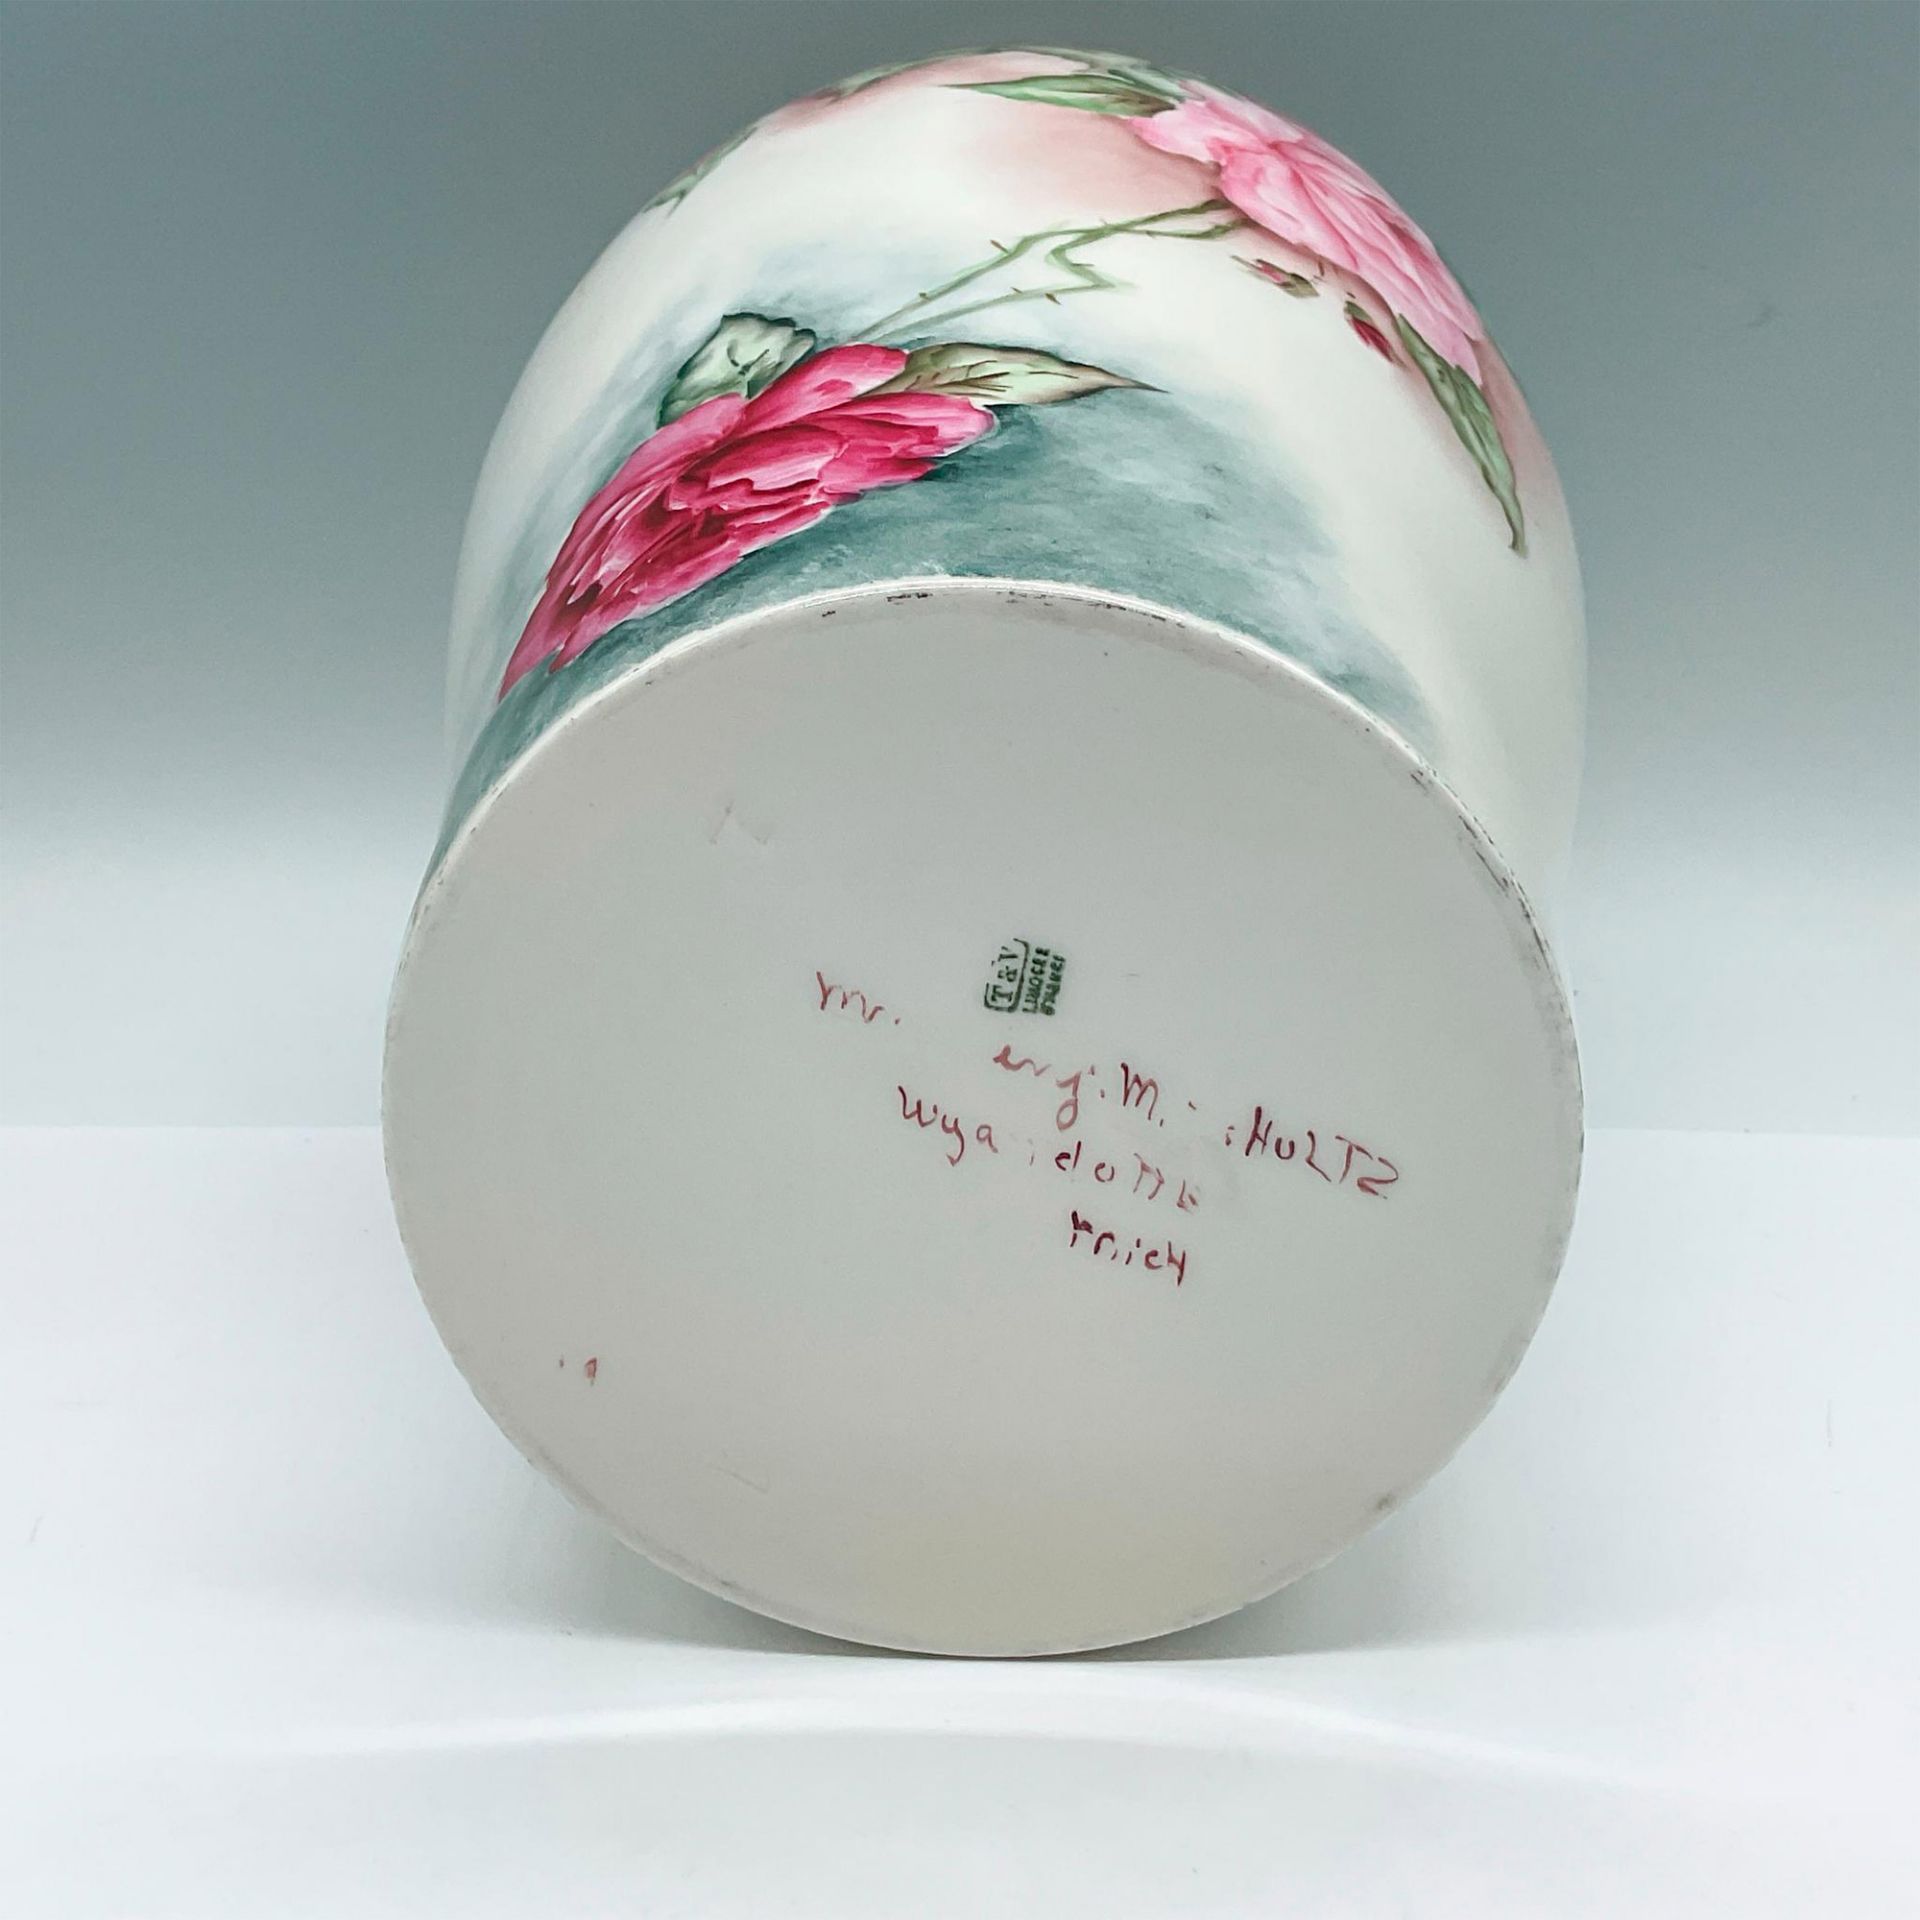 Tressemanes & Vogt Porcelain Limoges Floral Vase - Image 3 of 3